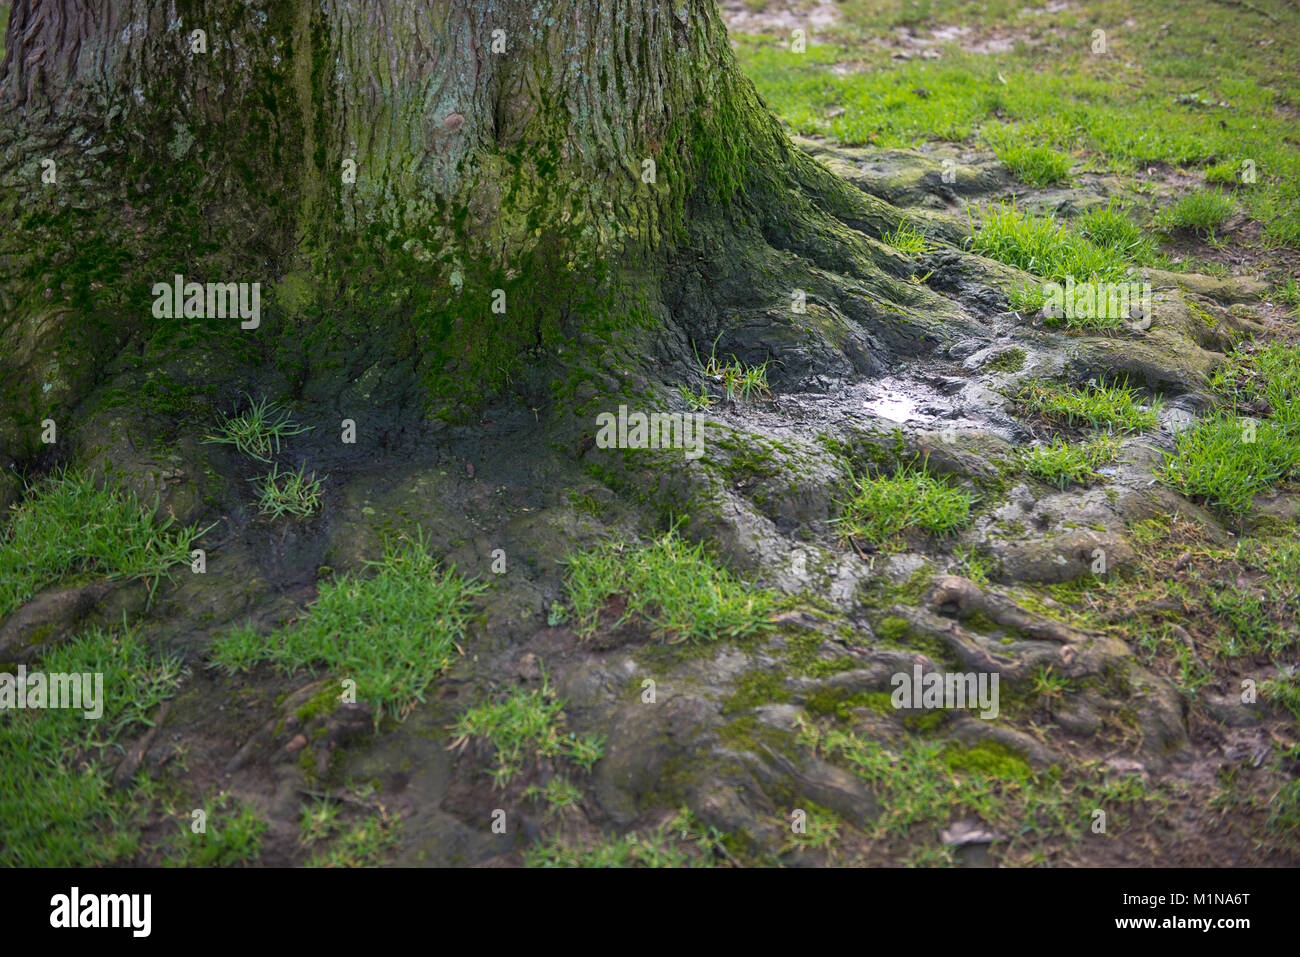 La base d'un tronc d'arbre avec des racines montrant dans le sol et l'herbe Banque D'Images